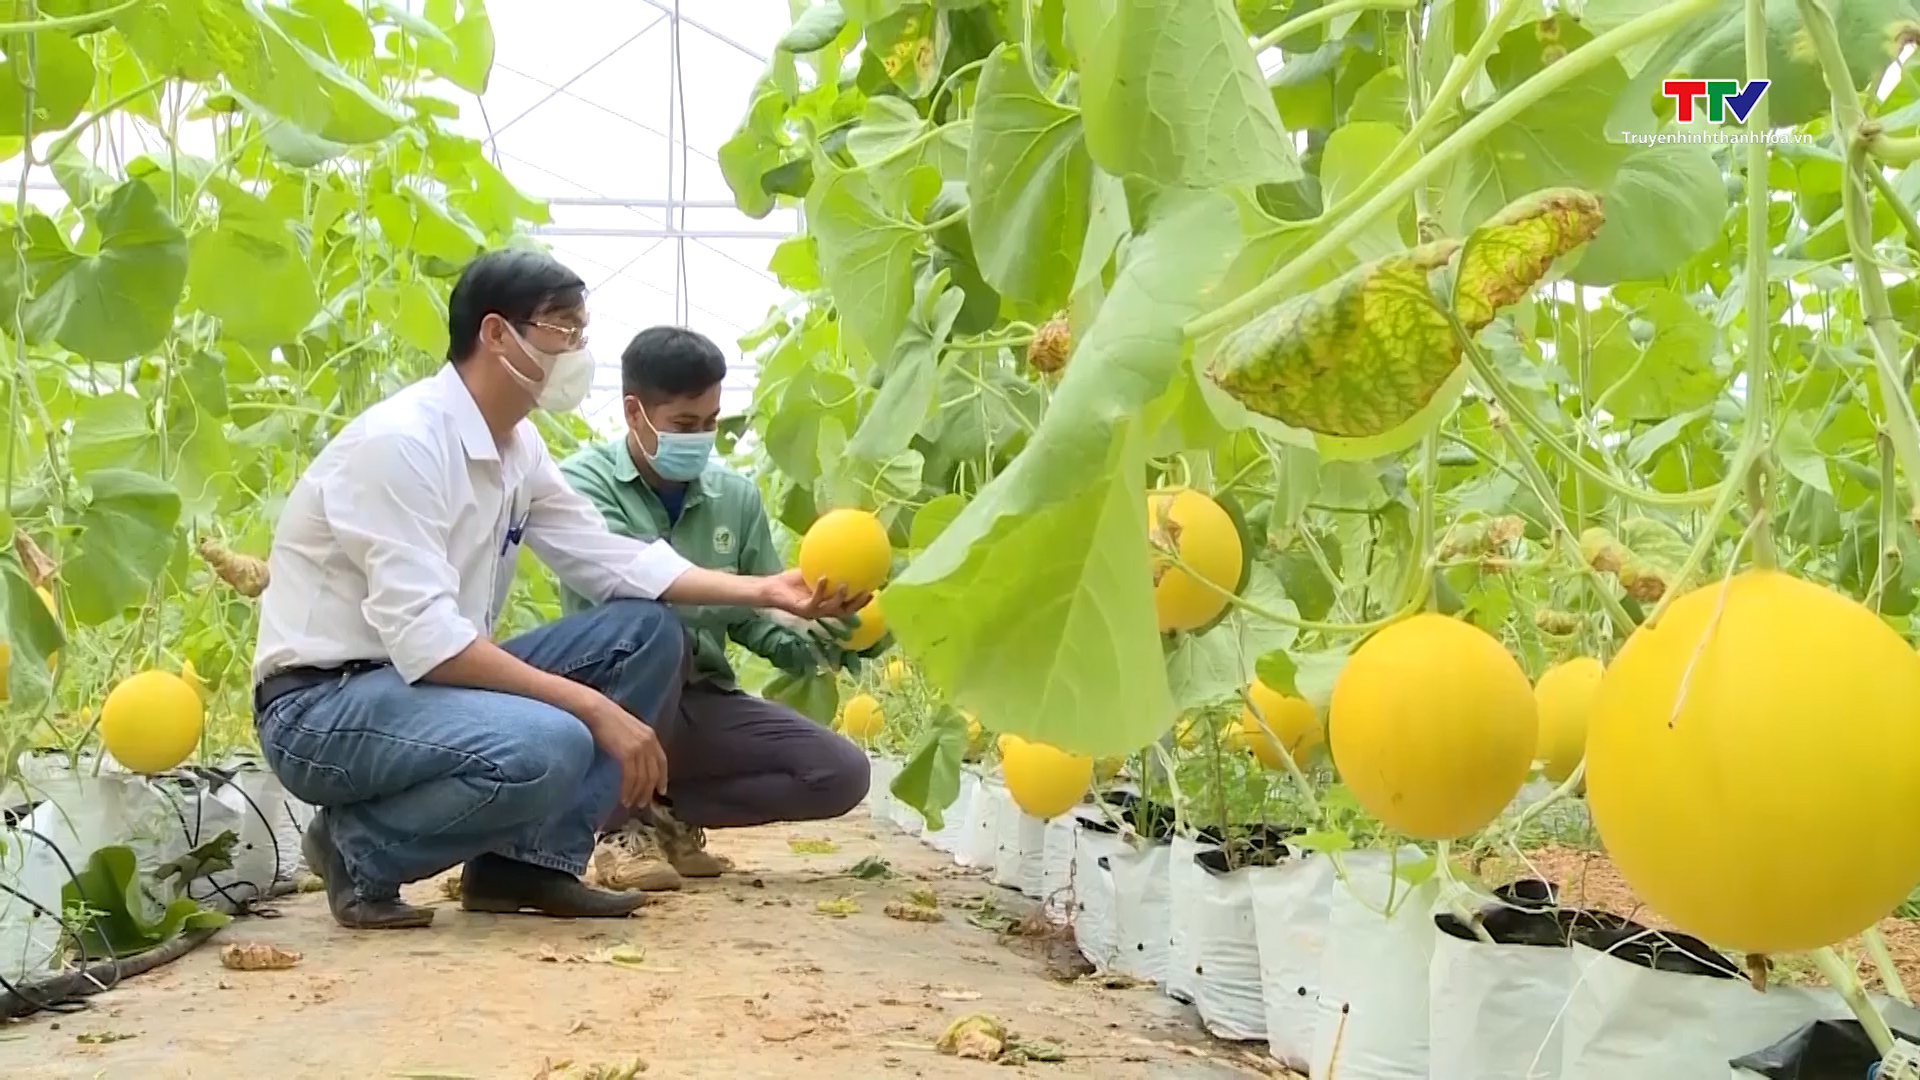 Huyện Vĩnh Lộc ứng dụng khoa học công nghệ trong sản xuất nông nghiệp - Ảnh 3.